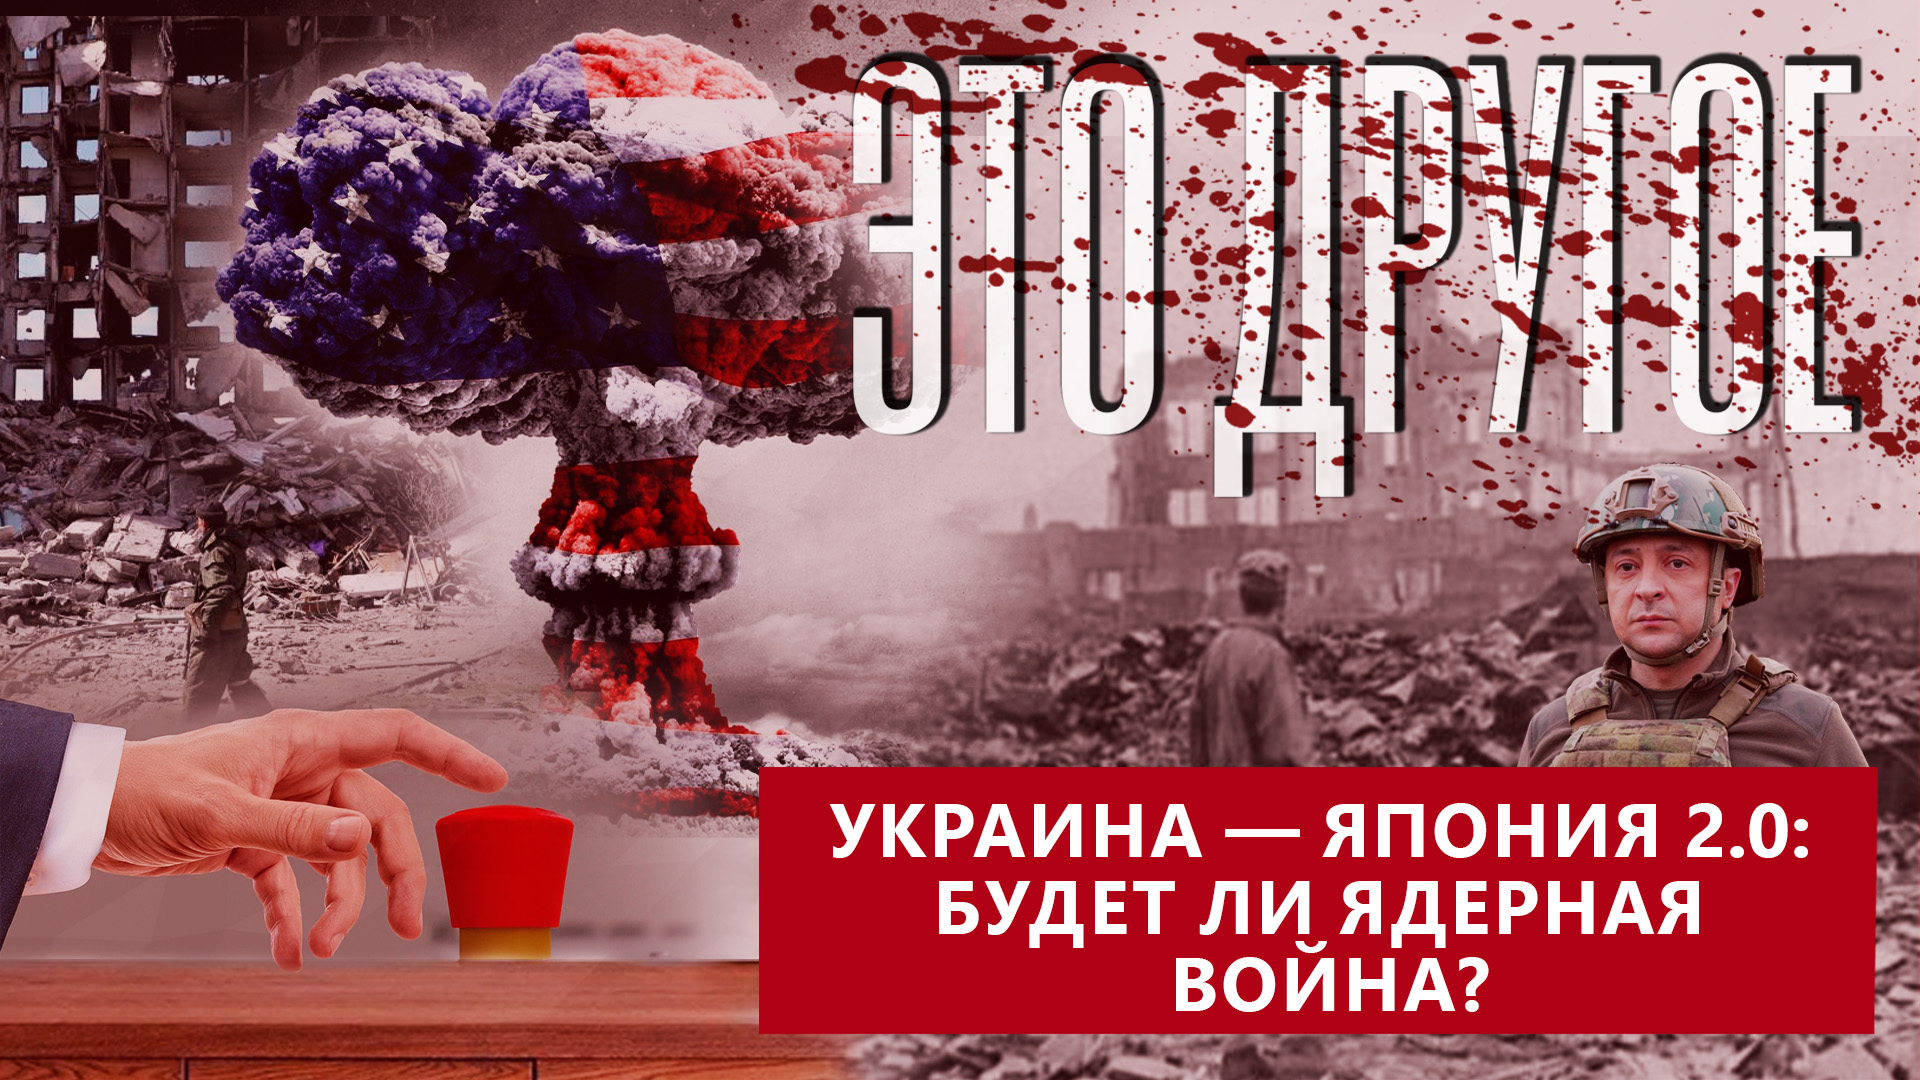 Будет ли ядерная война в Украине? Для чего США провоцируют Россию?  ЭТО ДРУГОЕ